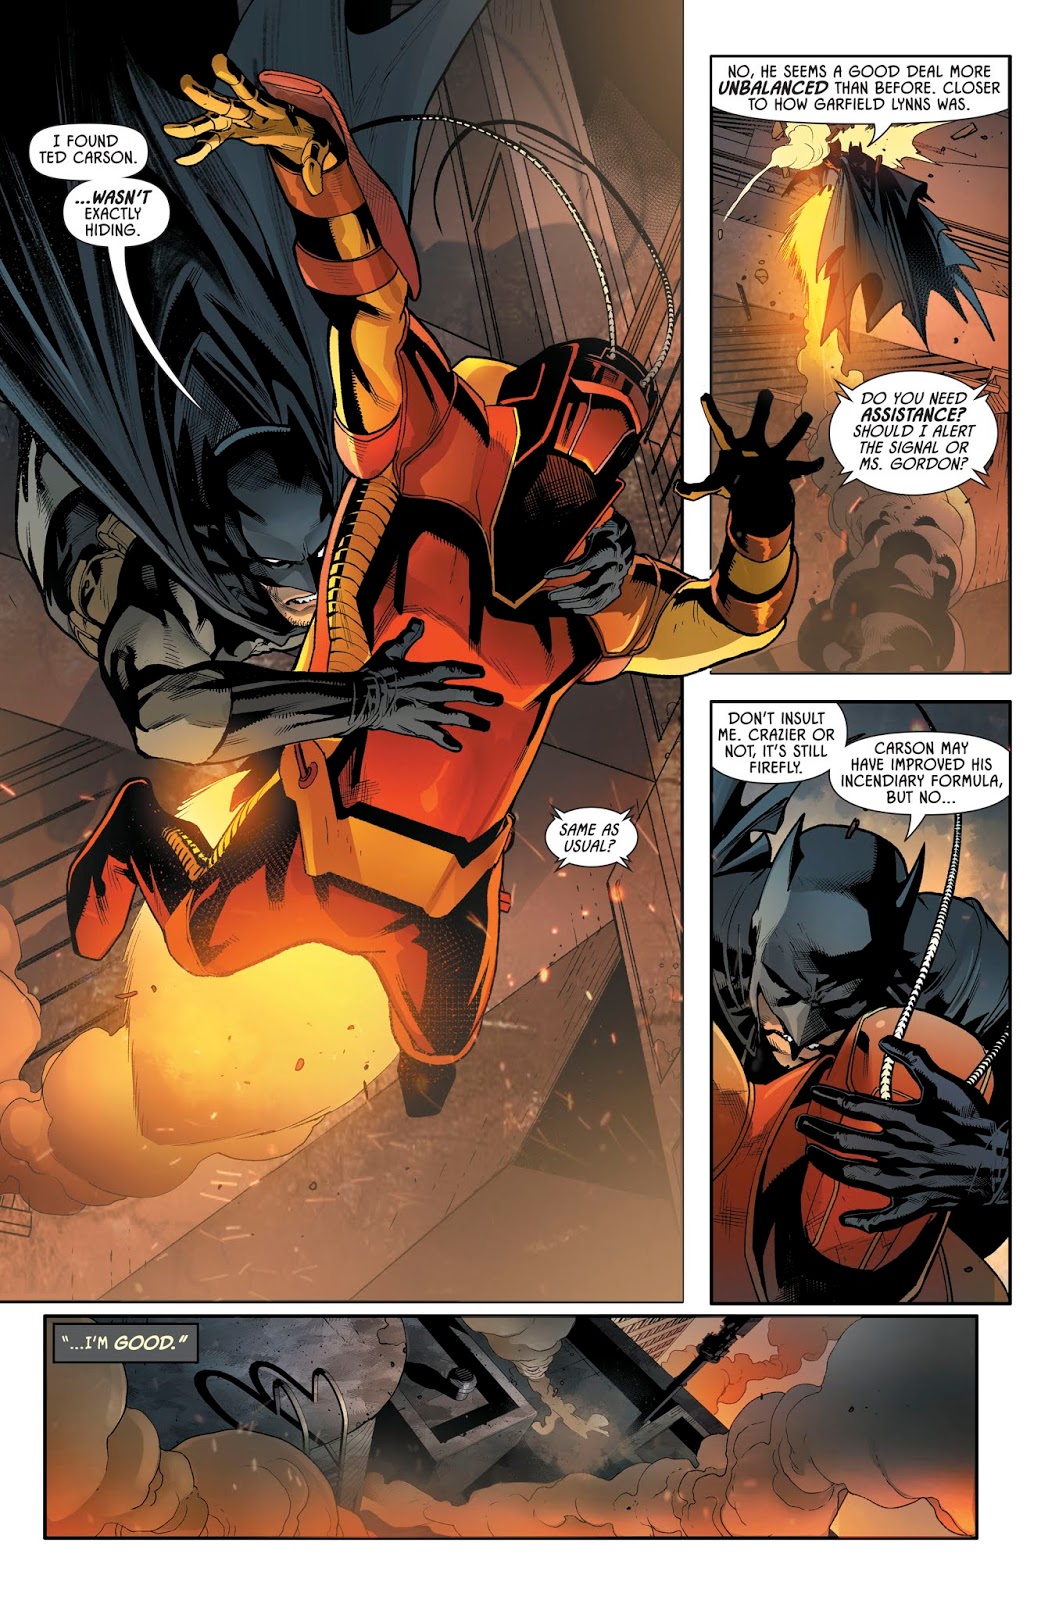 Batman VS Firefly (Detective Comics Vol. 1 #988)